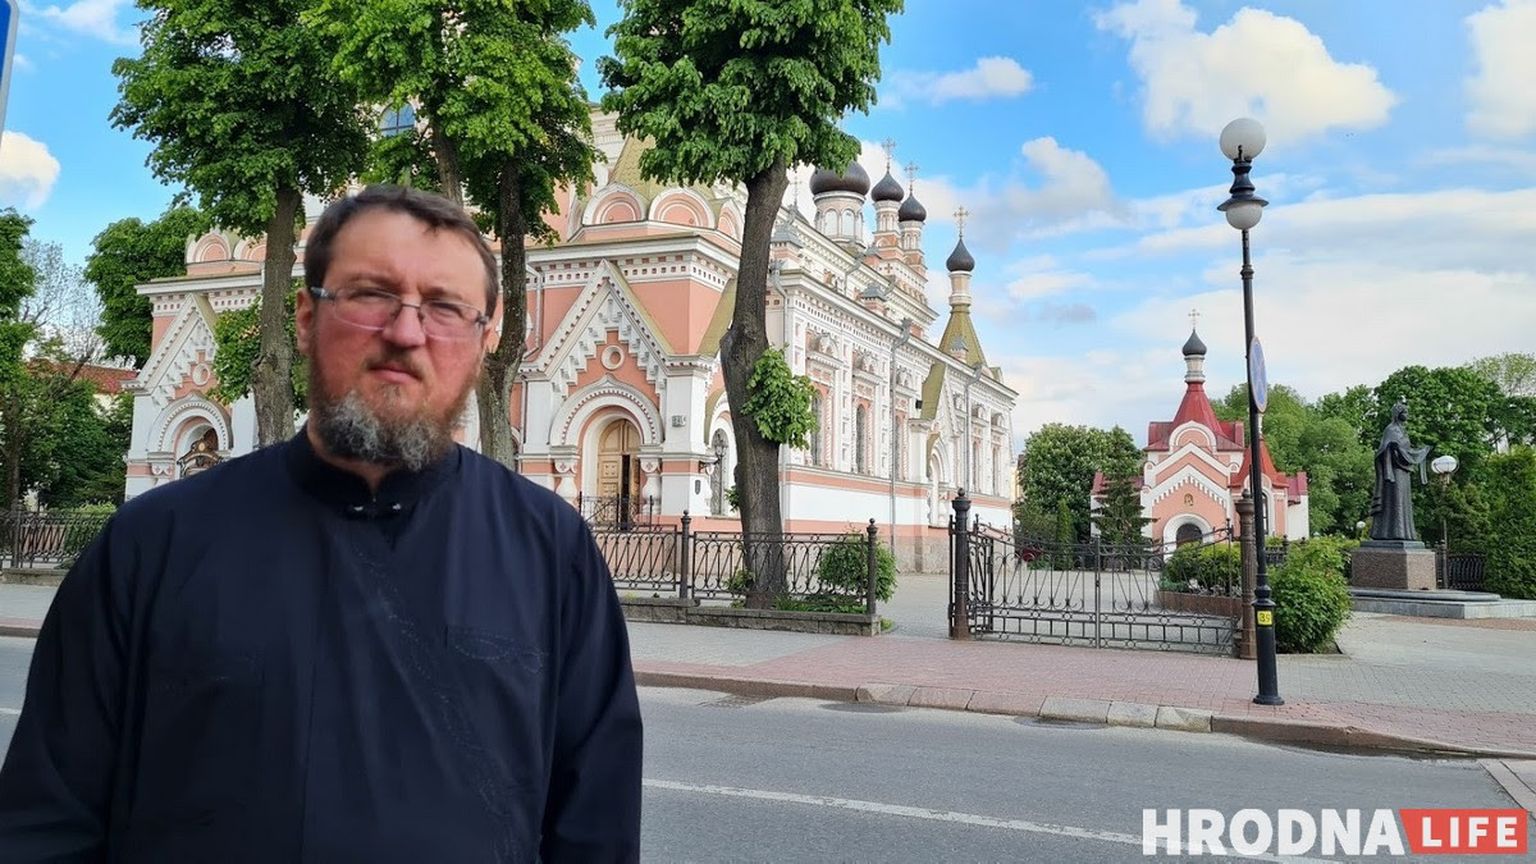 Георгий Рой, снятый с поста настоятеля Покровского собора в Гродно.  Он открыто осуждал насилие против граждан.